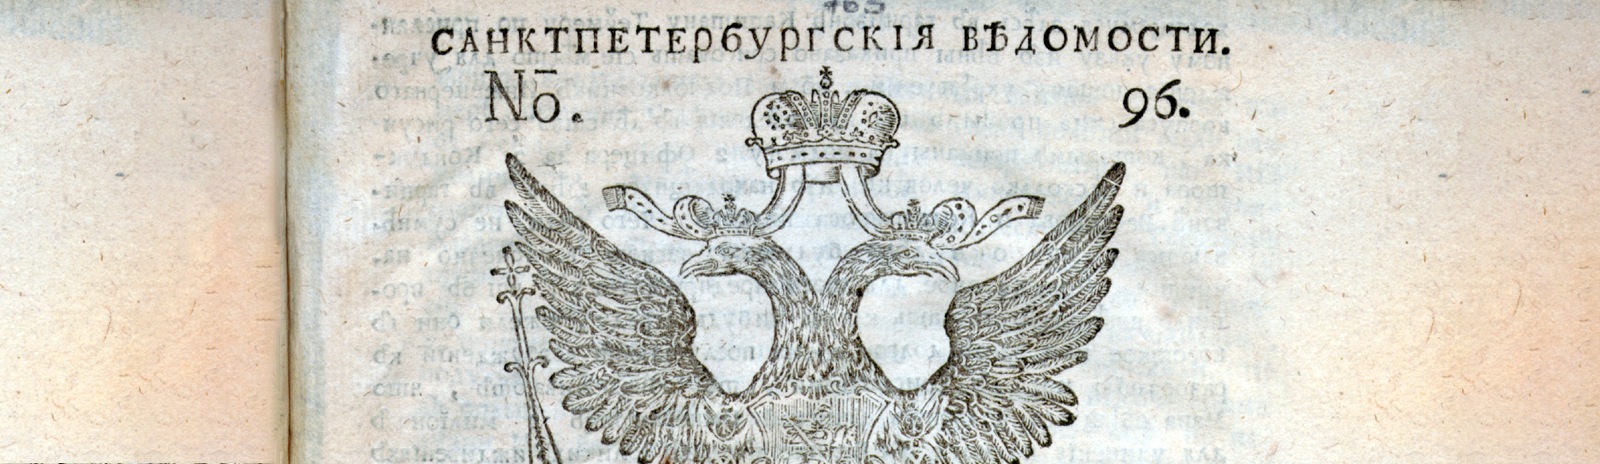 Фоновое изображение Санктпетербургские ведомости. № 96, ноября 29 дня 1748 года